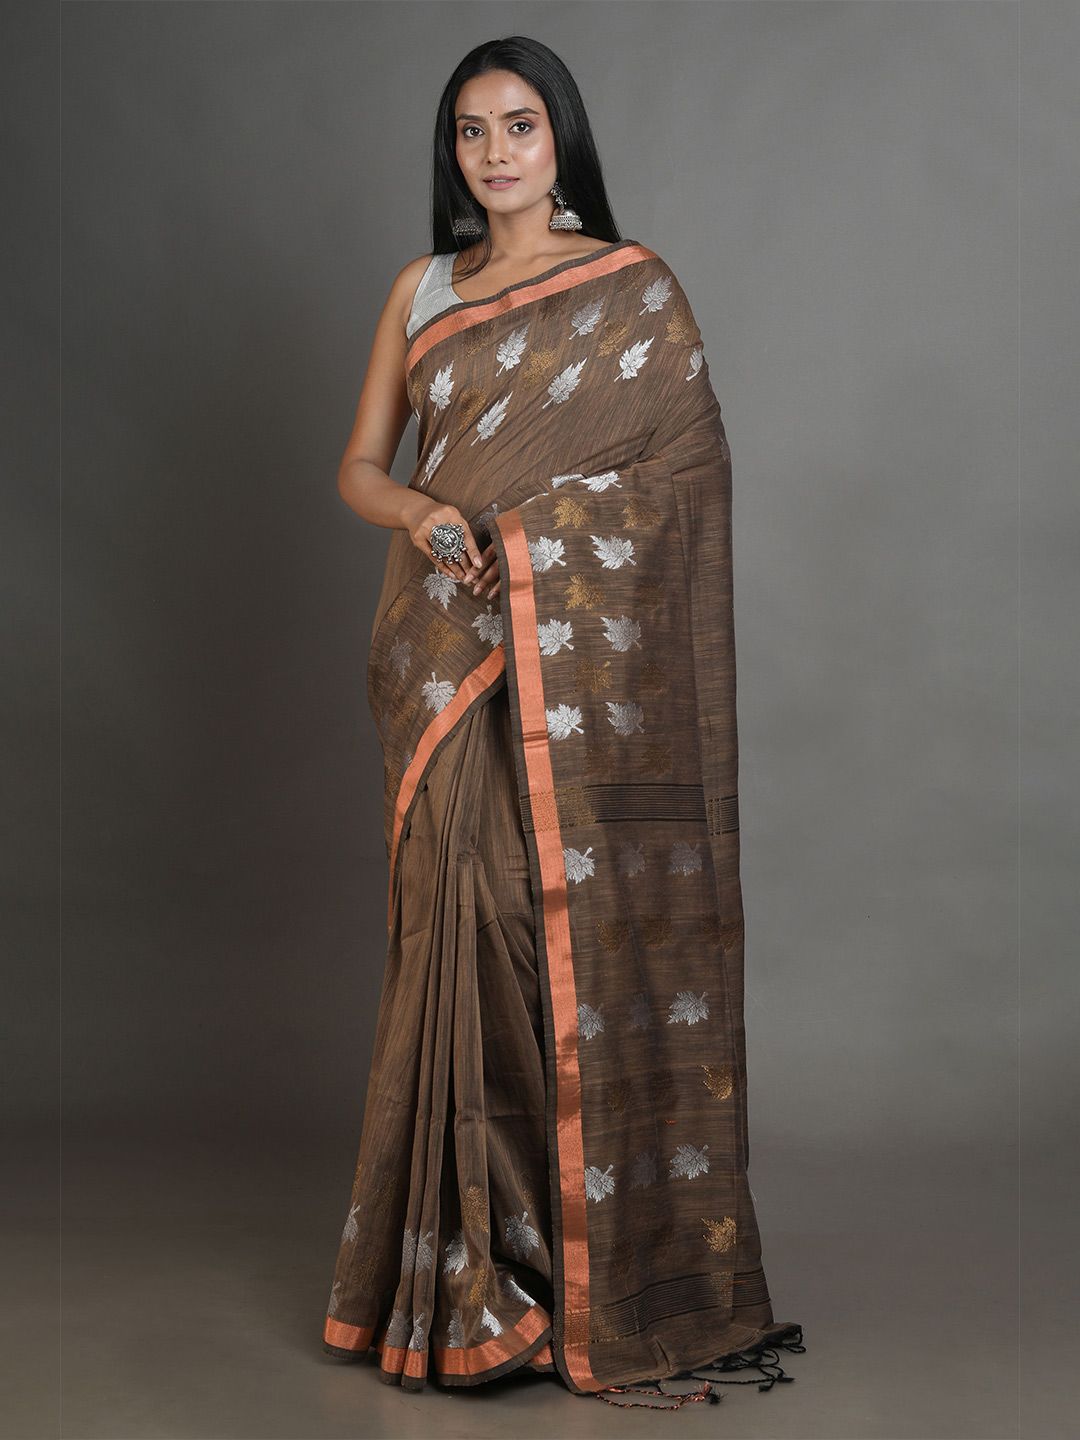 Arhi Brown & Silver-Toned Woven Design Zari Pure Linen Saree Price in India